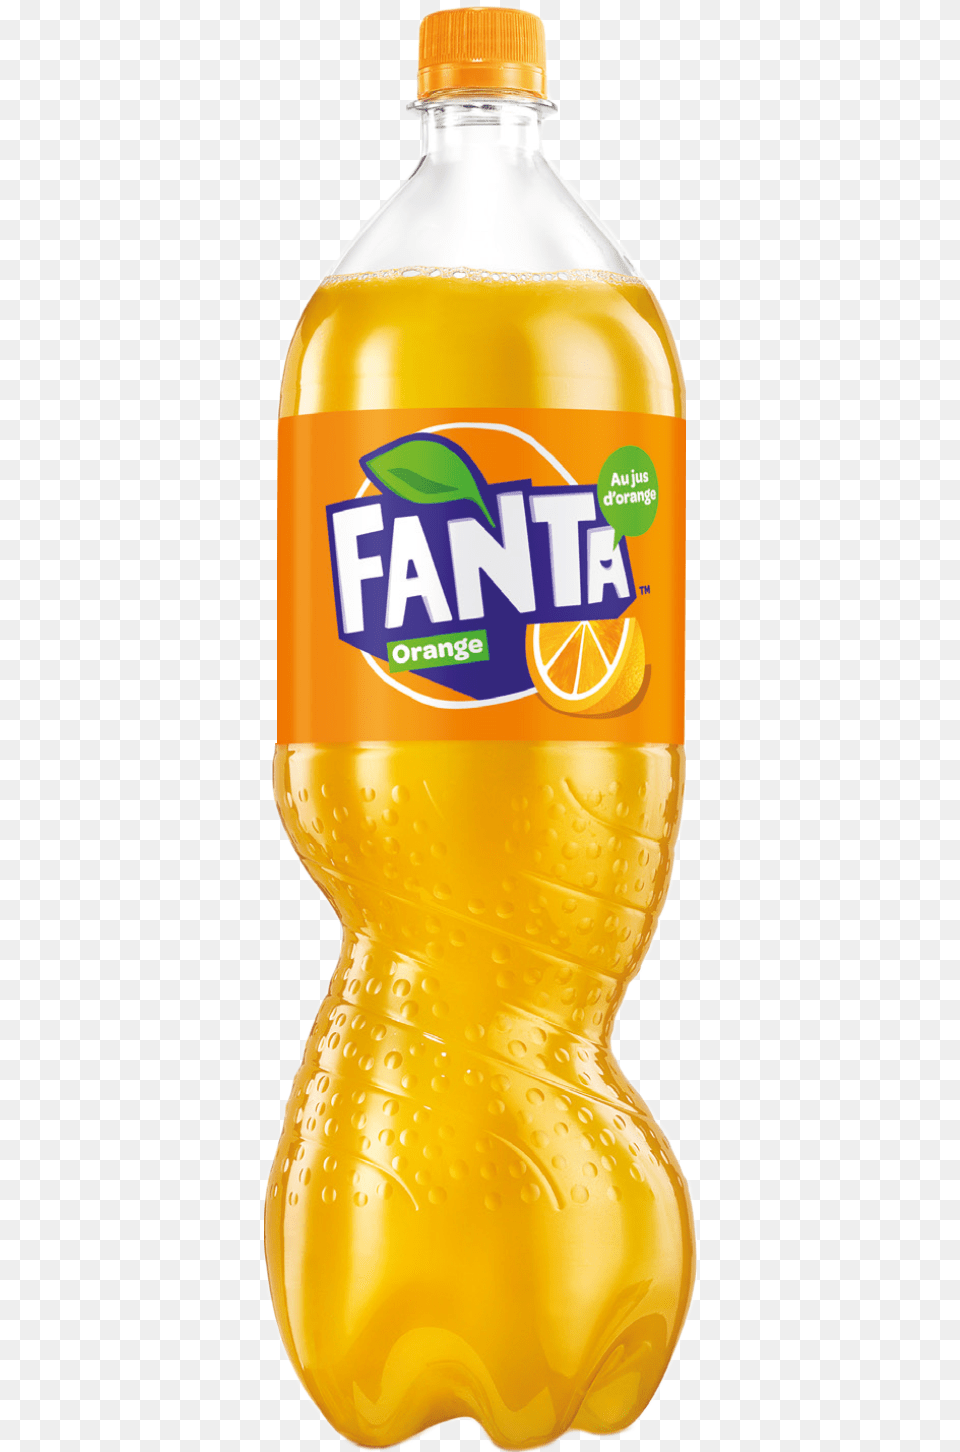 Bouteille Orange Fanta Orange, Beverage, Juice, Bottle, Pop Bottle Png Image